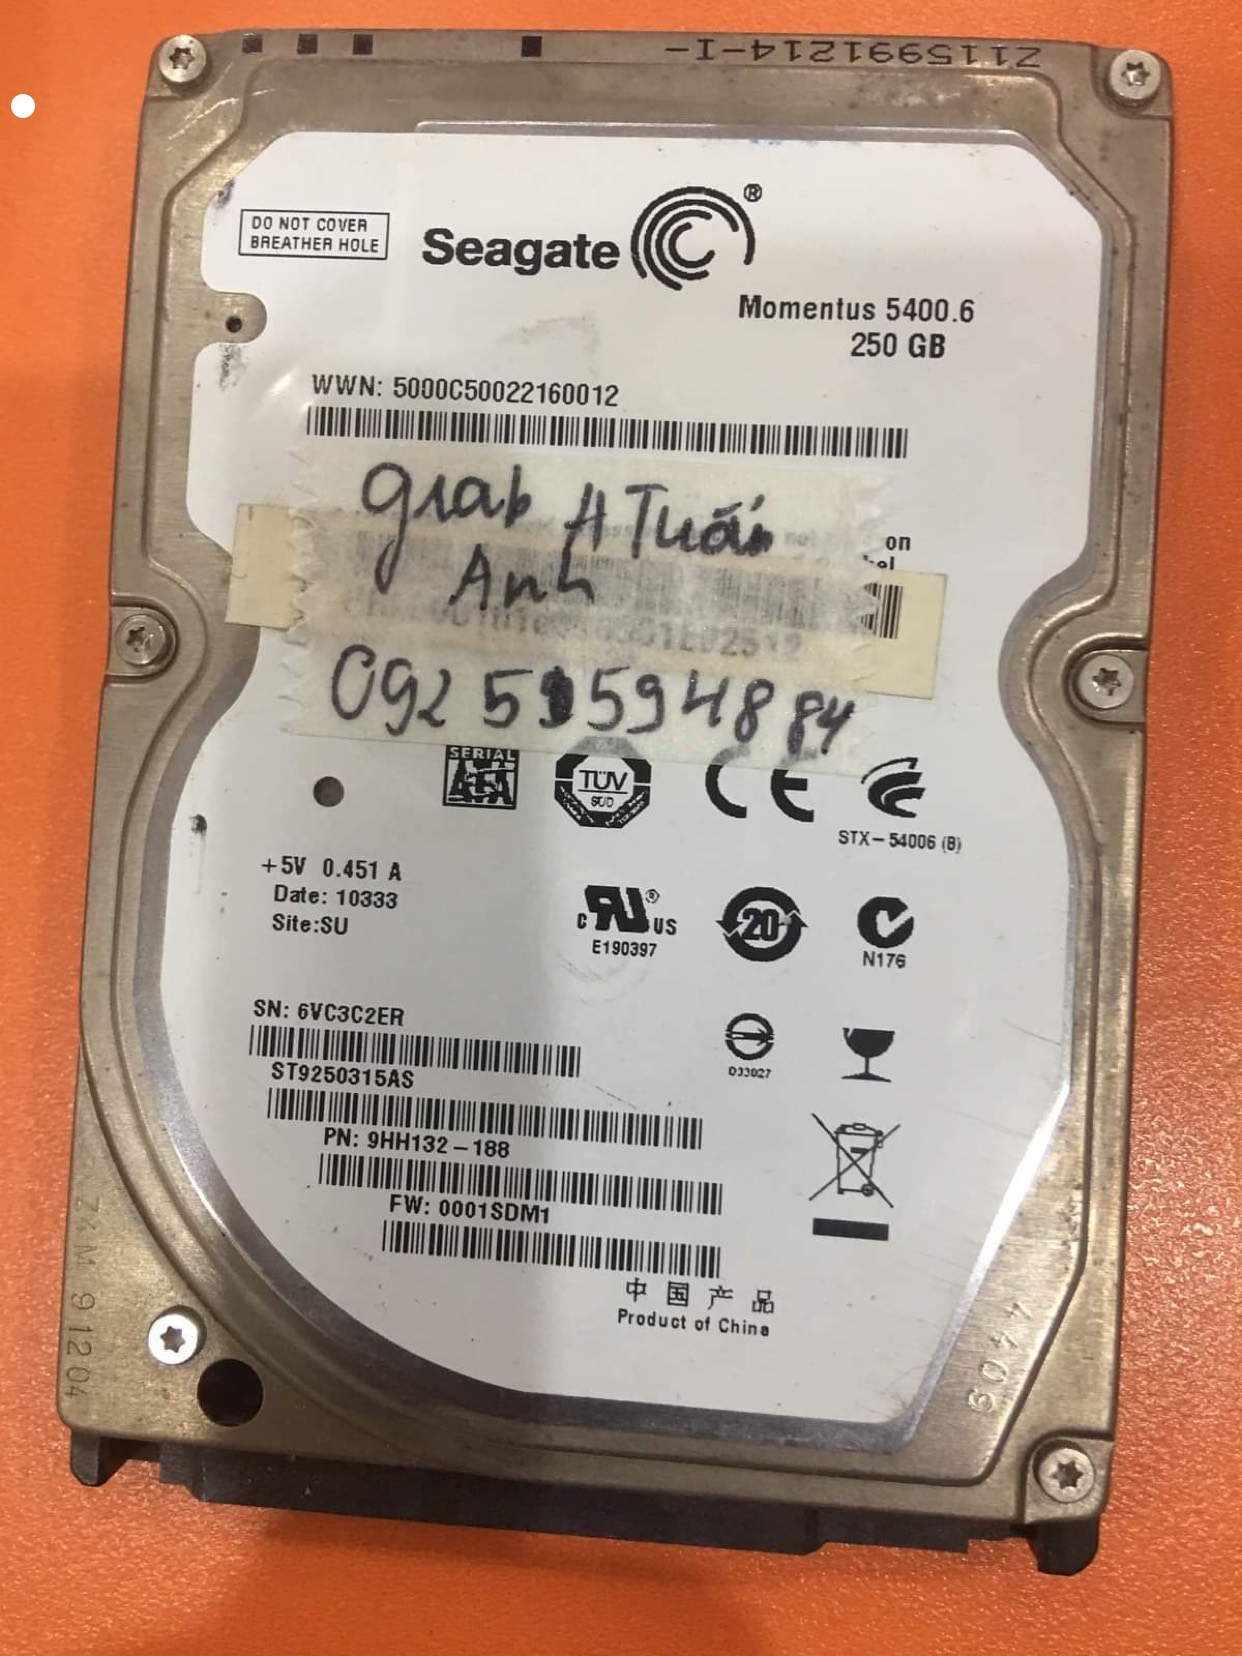 Phục hồi dữ liệu ổ cứng Seagate 250GB đầu đọc kém 02/11/2020 - cuumaytinh